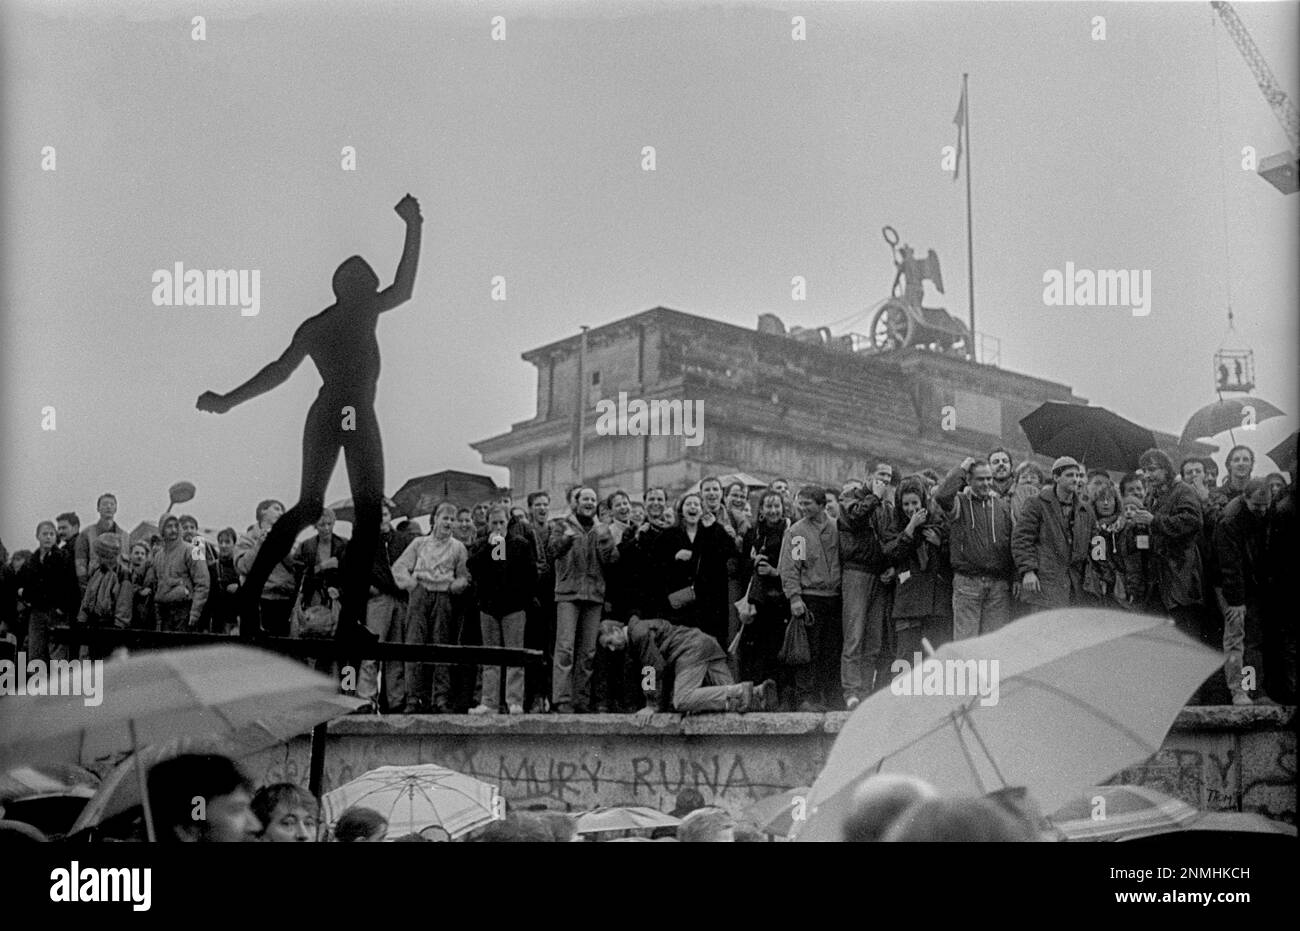 DDR, Berlin, 22.12.1989, Öffnung des Brandenburger Tors, die Mauer wird am Brandenburger Tor geöffnet, Menschen an der Mauer Stockfoto